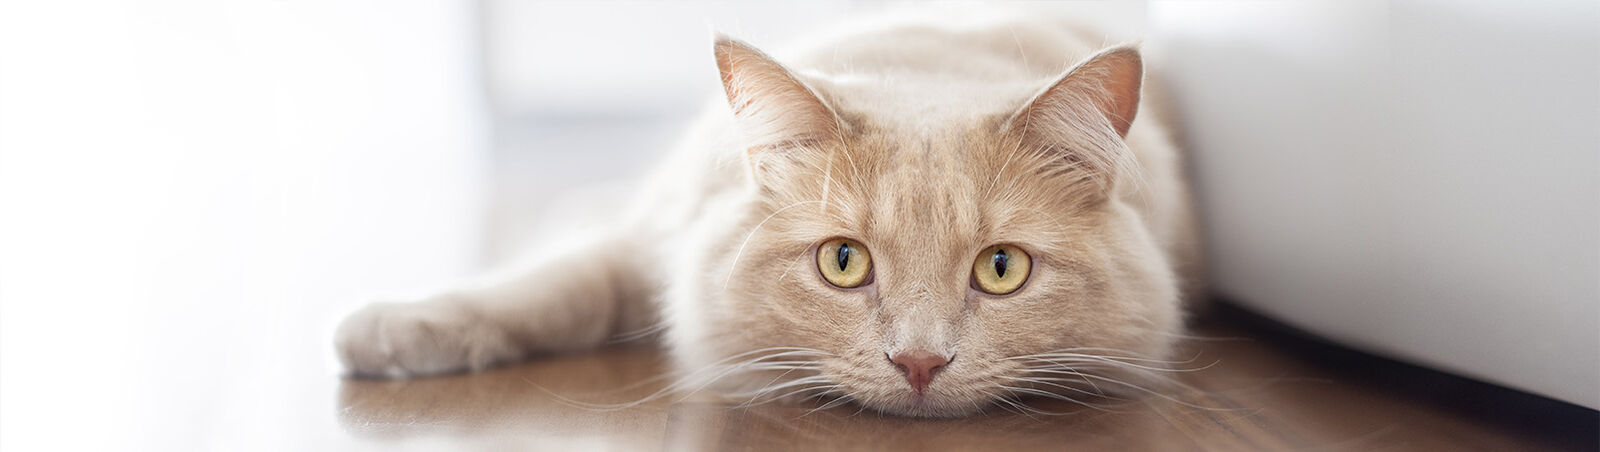 Eine Katze liegt vor einem Sofa auf dem Boden und spitzt die Ohren.